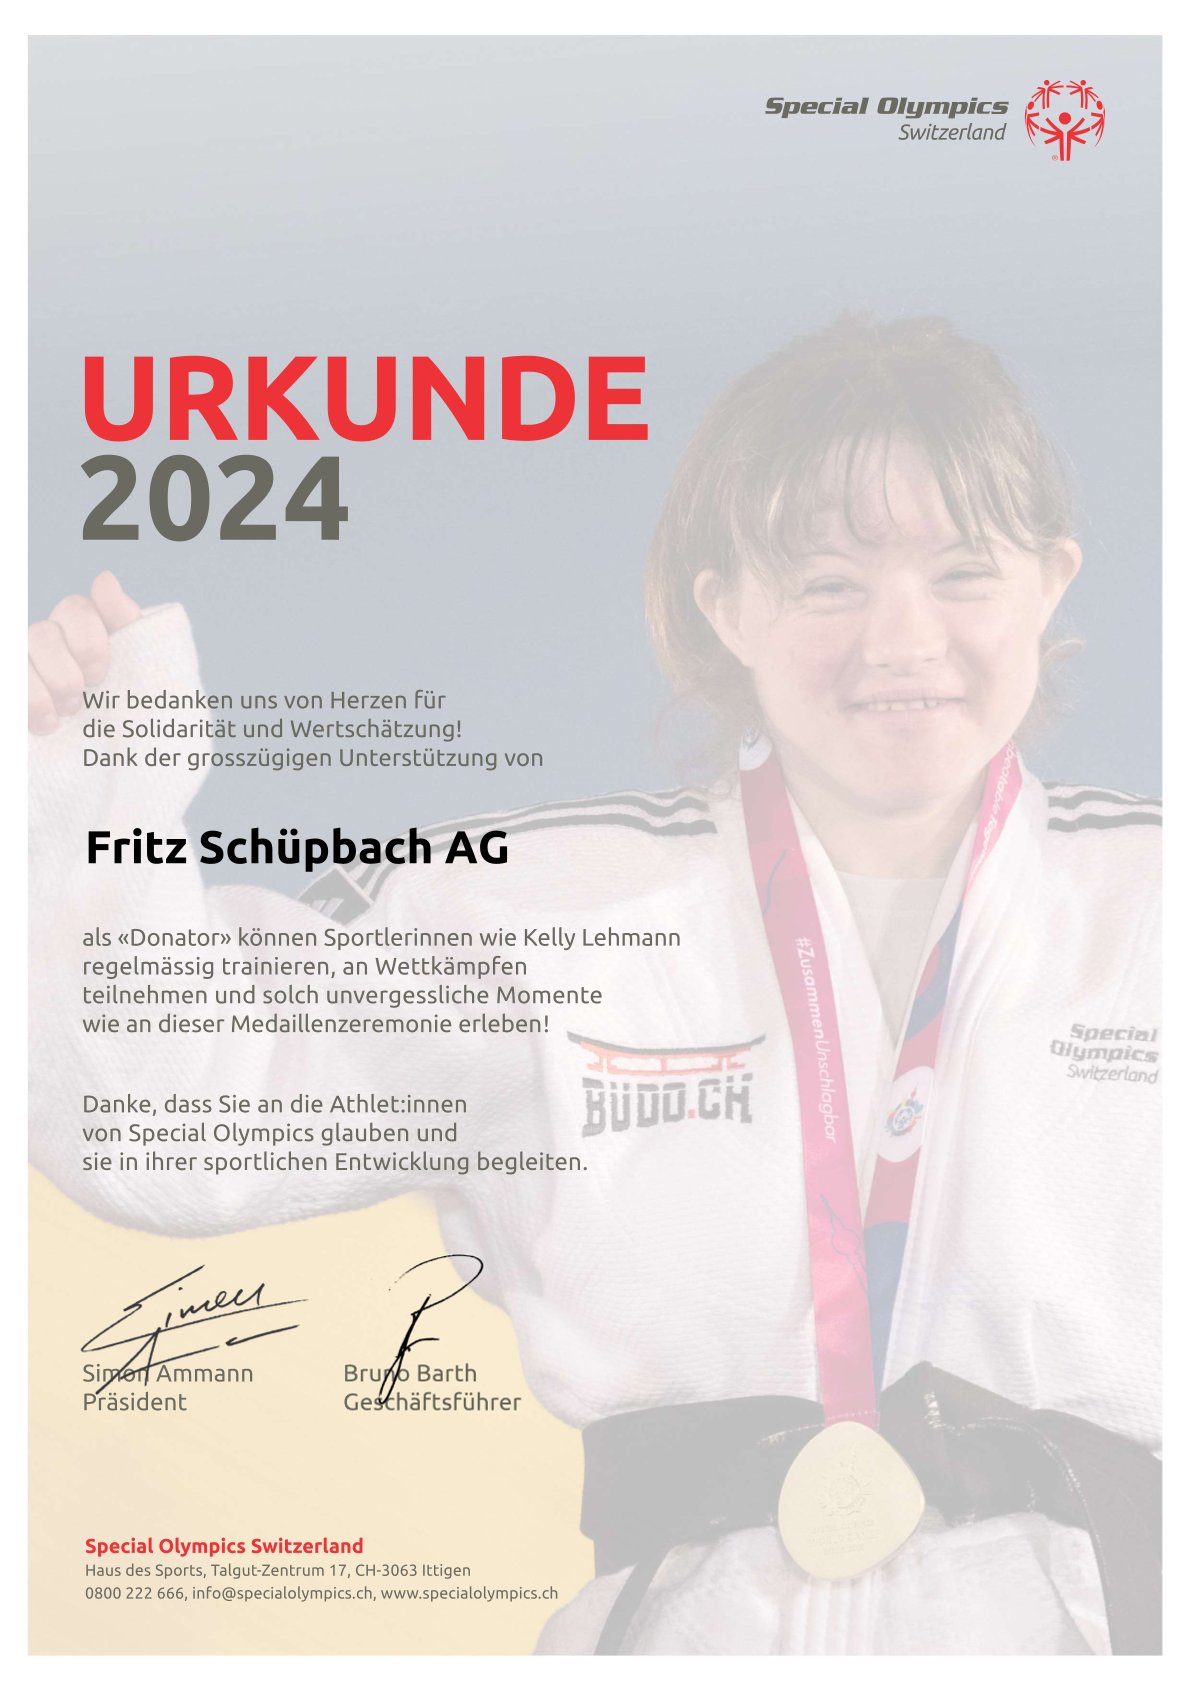 32_Urkunde_2024_Fritz Schüpbach AG.jpg